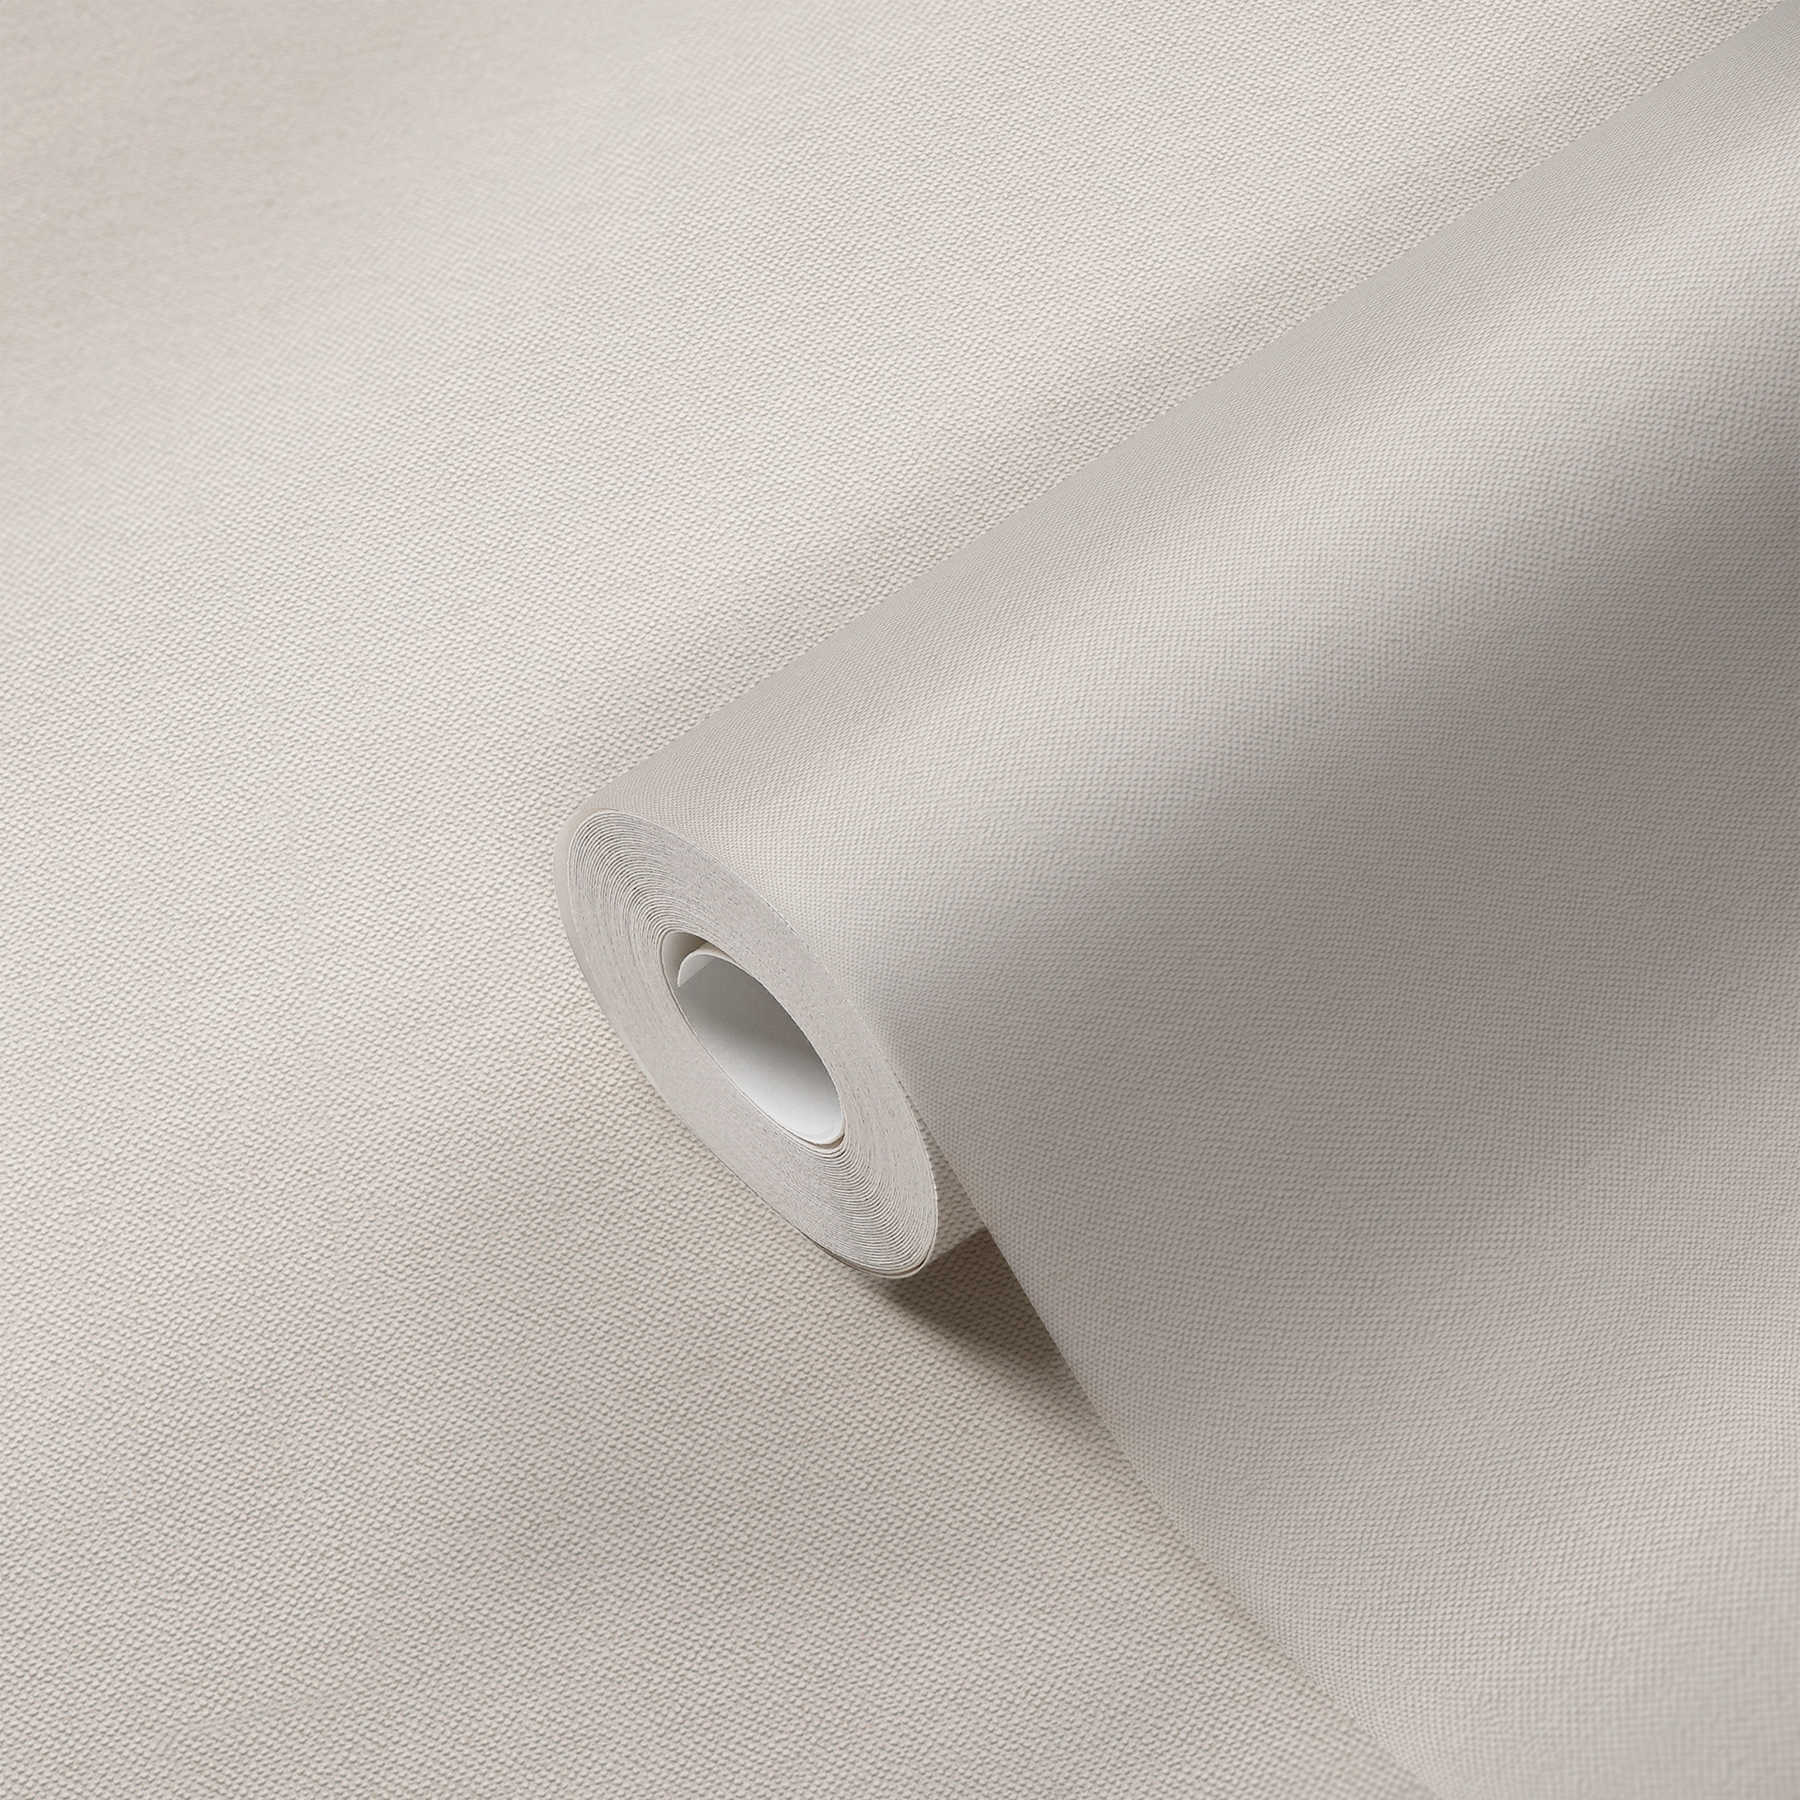             Carta da parati a tinta unita color crema con struttura tessile dal design elegante
        